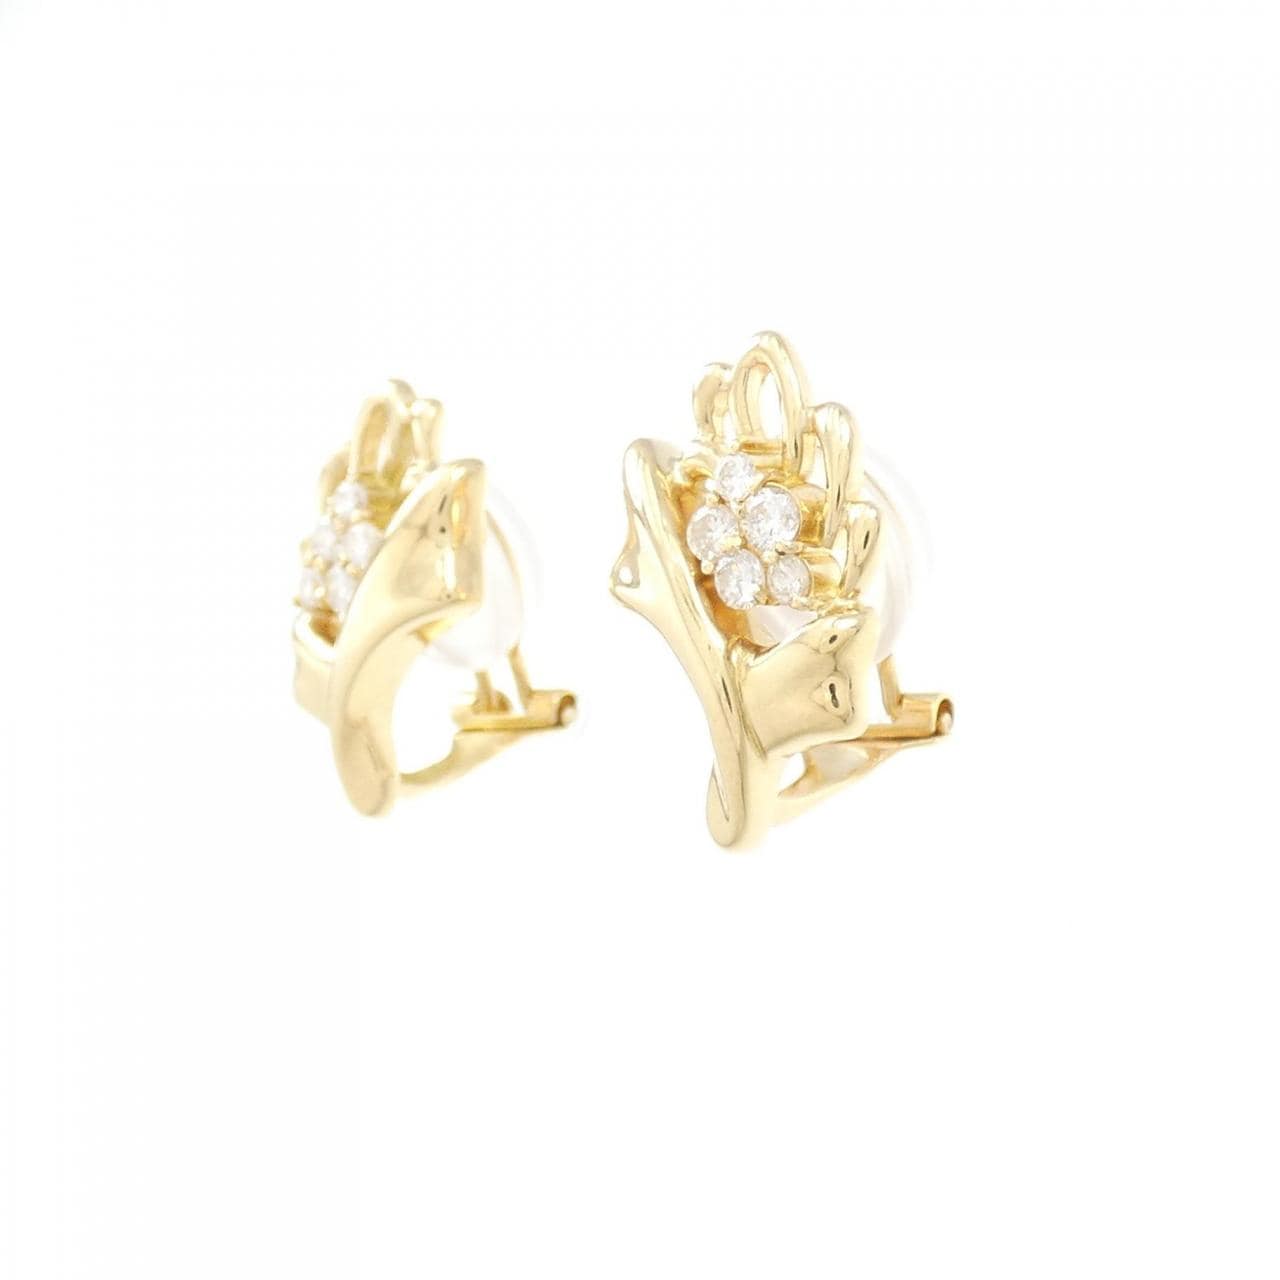 K18YG Diamond earrings 0.32CT